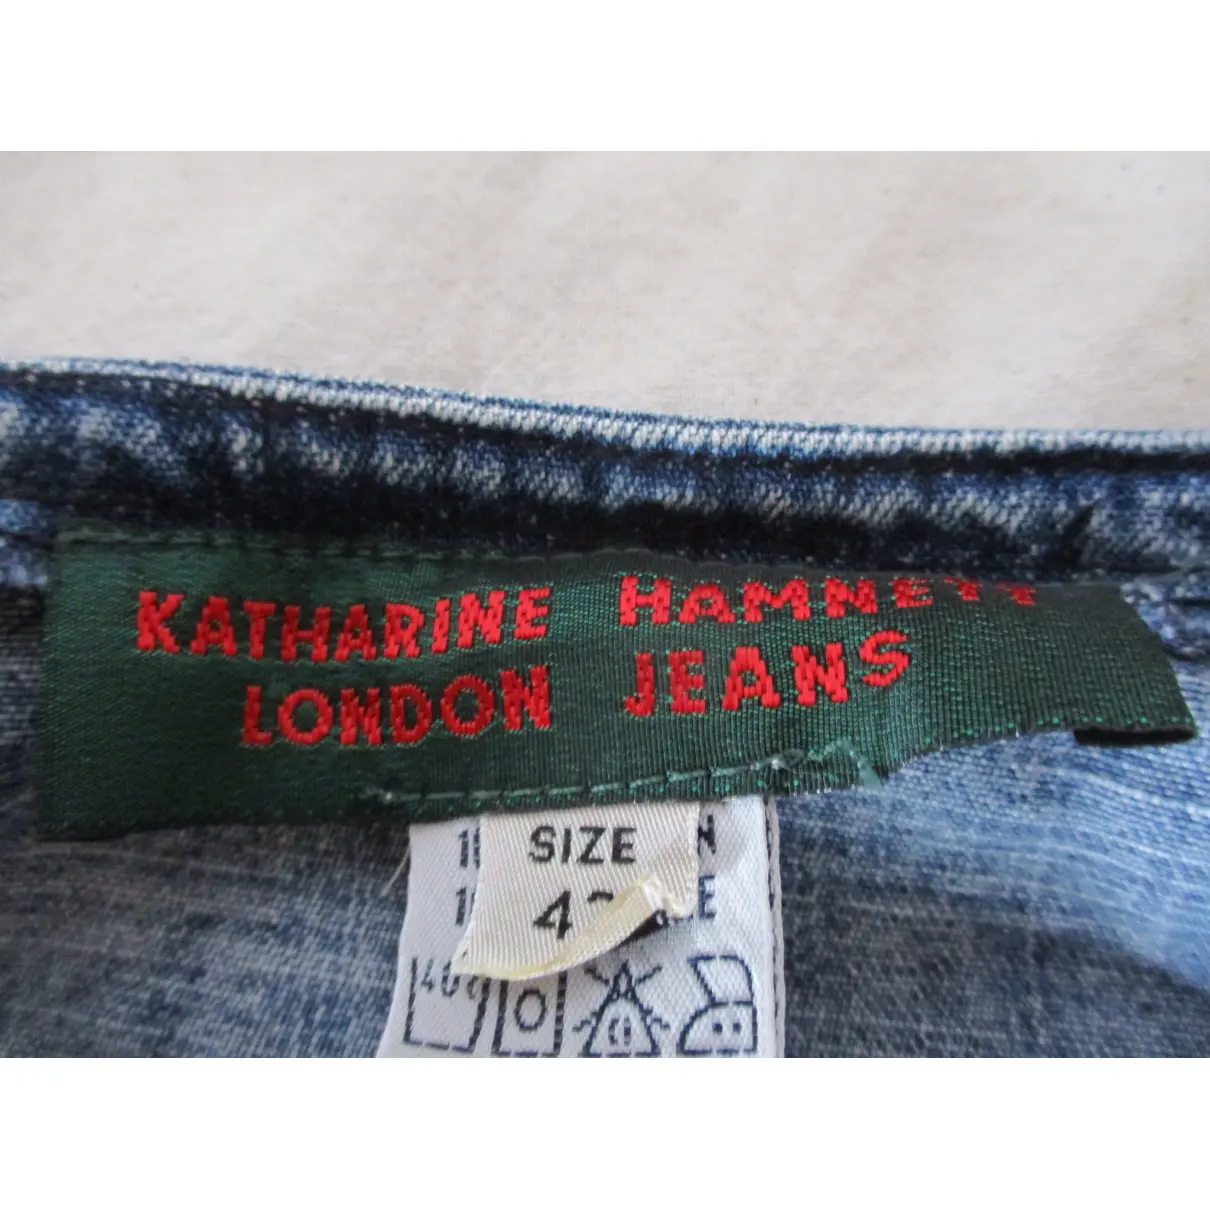 Luxury Katharine Hamnett Skirts Women